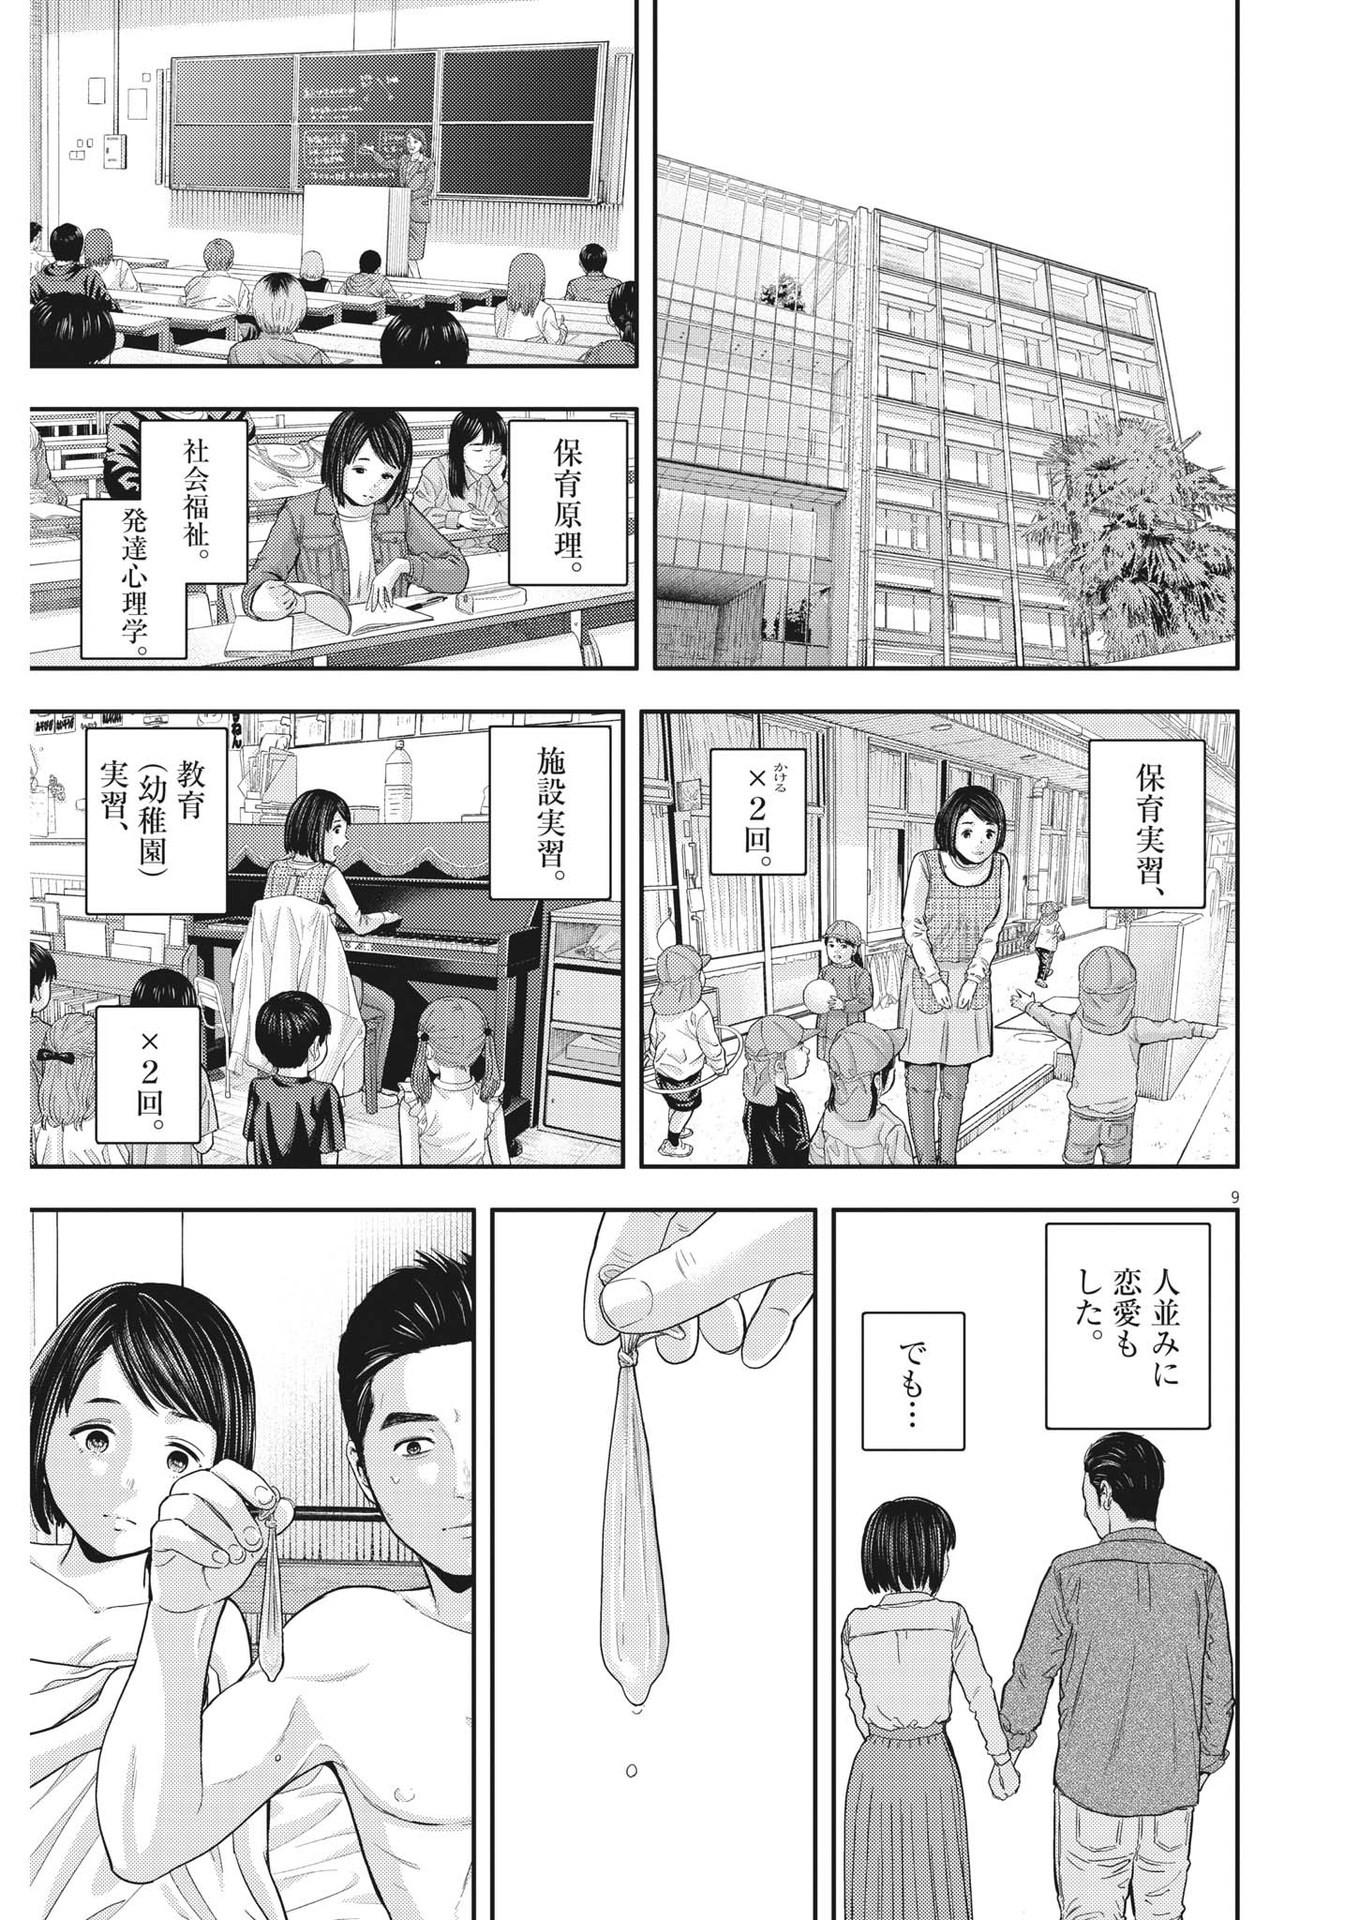 Yumenashi-sensei no Shinroshidou - Chapter 21 - Page 9